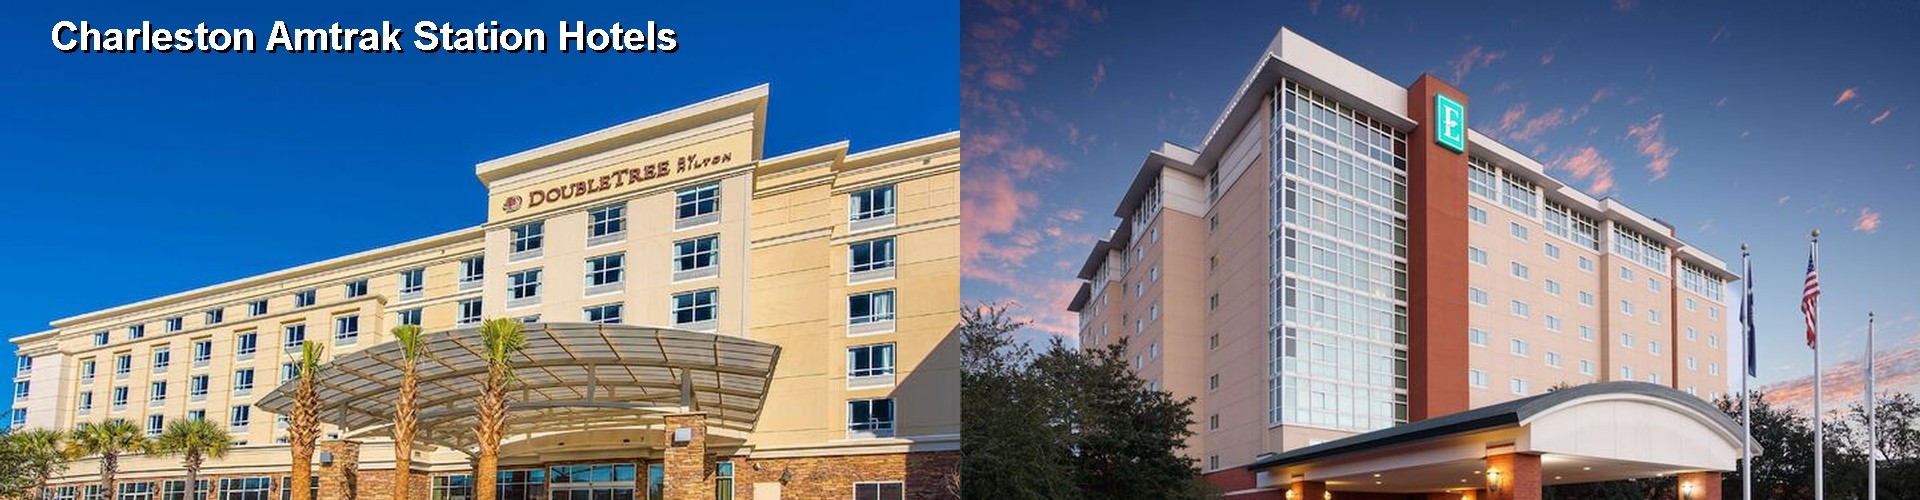 3 Best Hotels near Charleston Amtrak Station